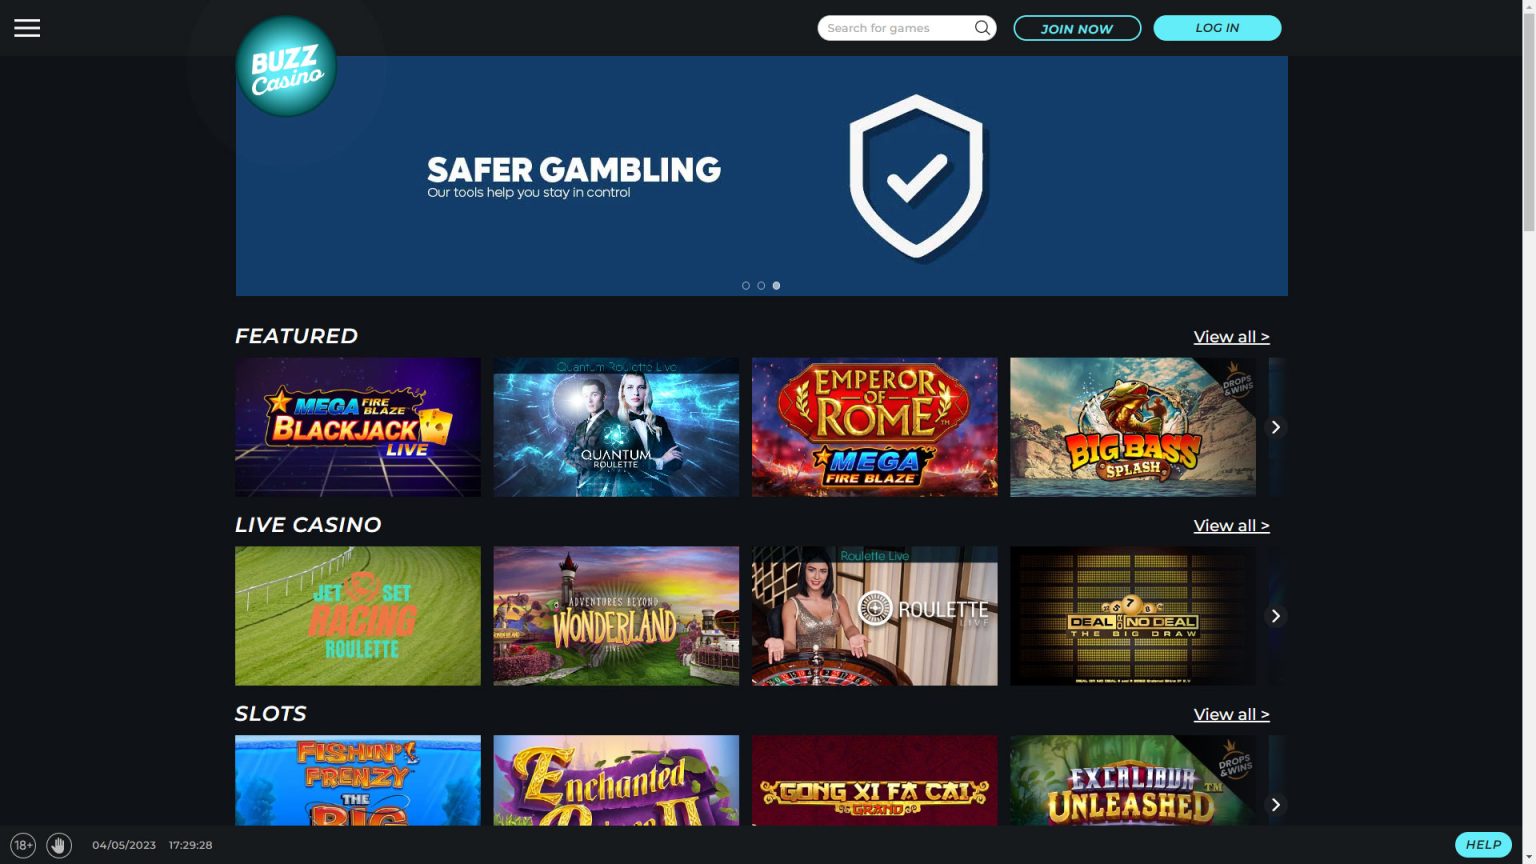 Buzz Casino Screenshot